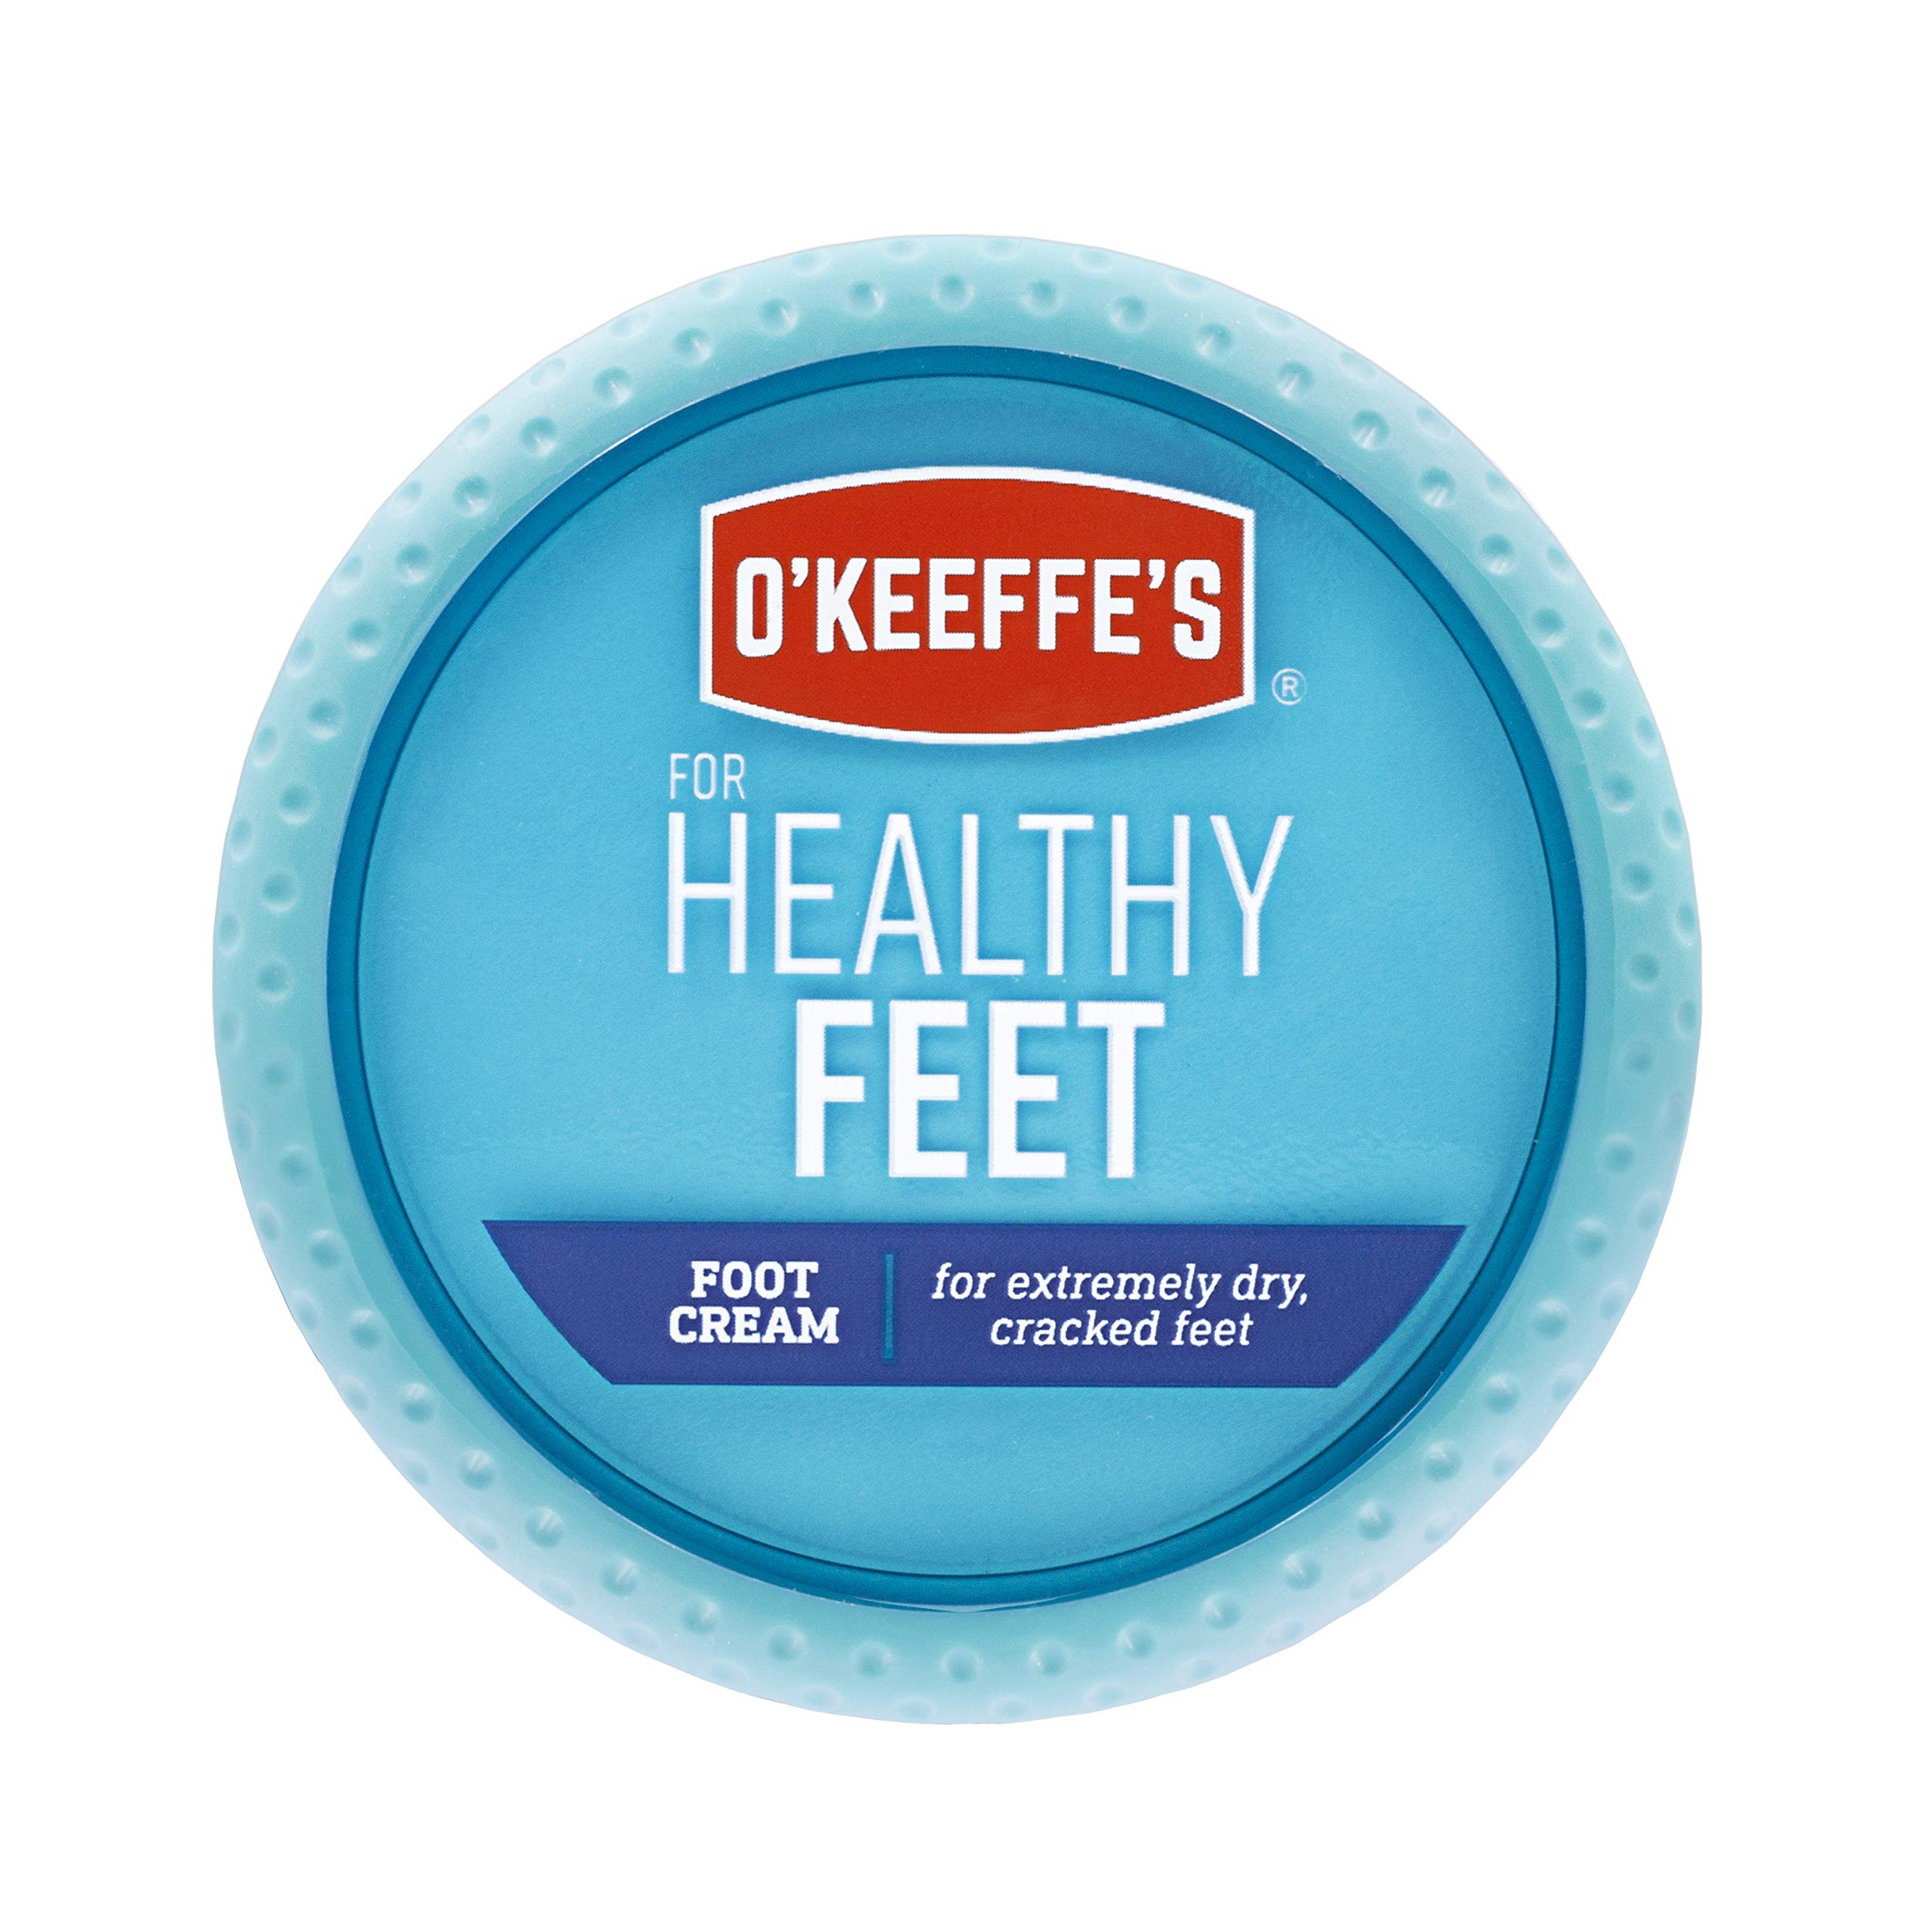 Buy Softwalk Cracked Heel Repair Cream Online at Best Price of Rs 95 -  bigbasket